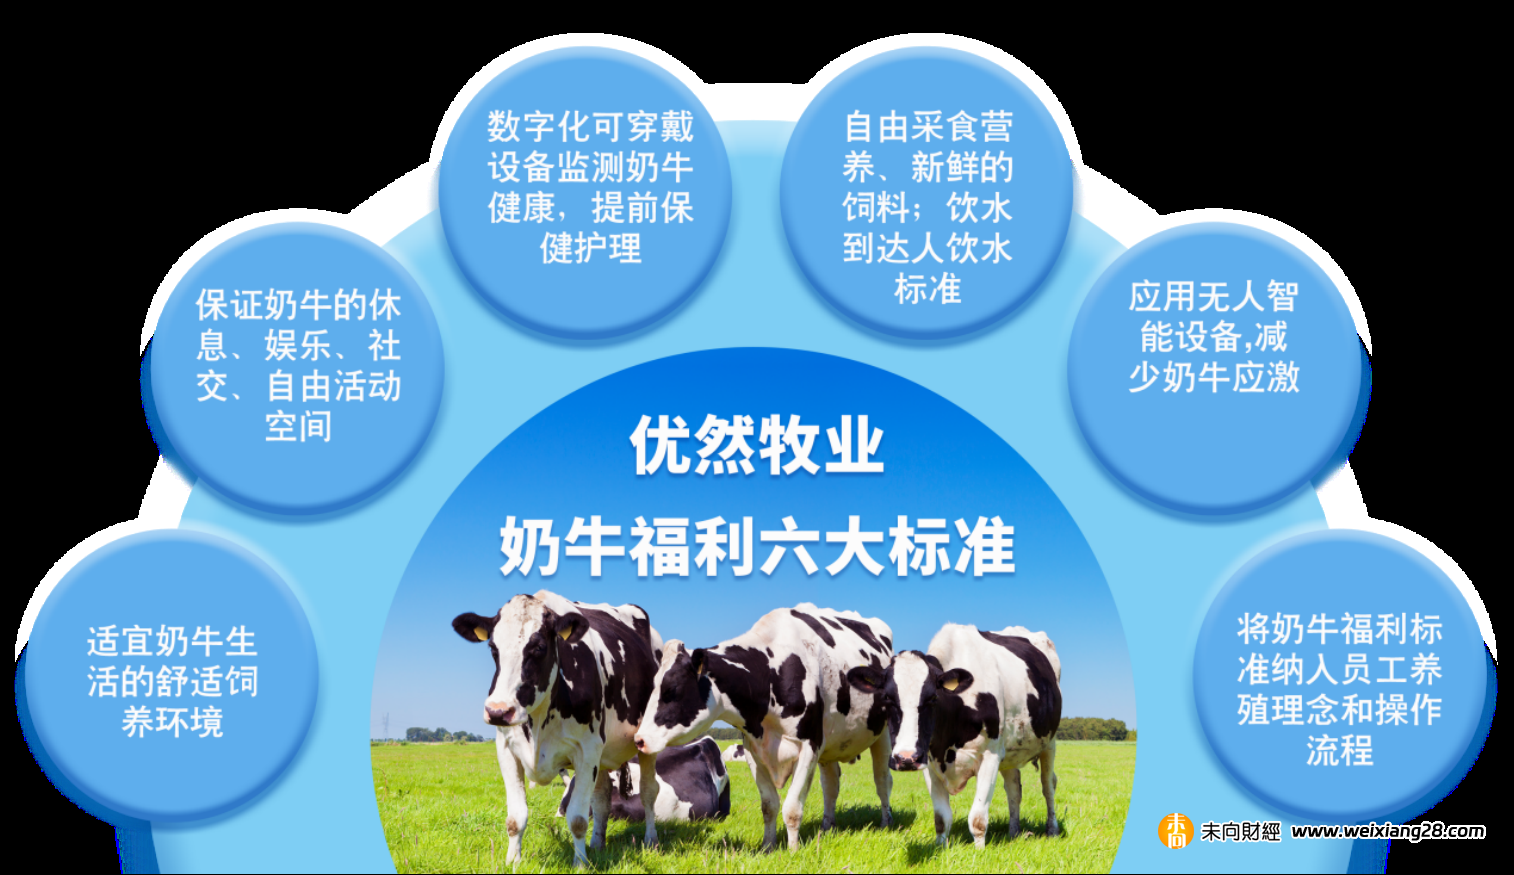 科技賦能打造乳牛養殖最佳ESG實踐 ，優然牧業(9858.HK)榮獲“年度ESG先鋒獎”插图12